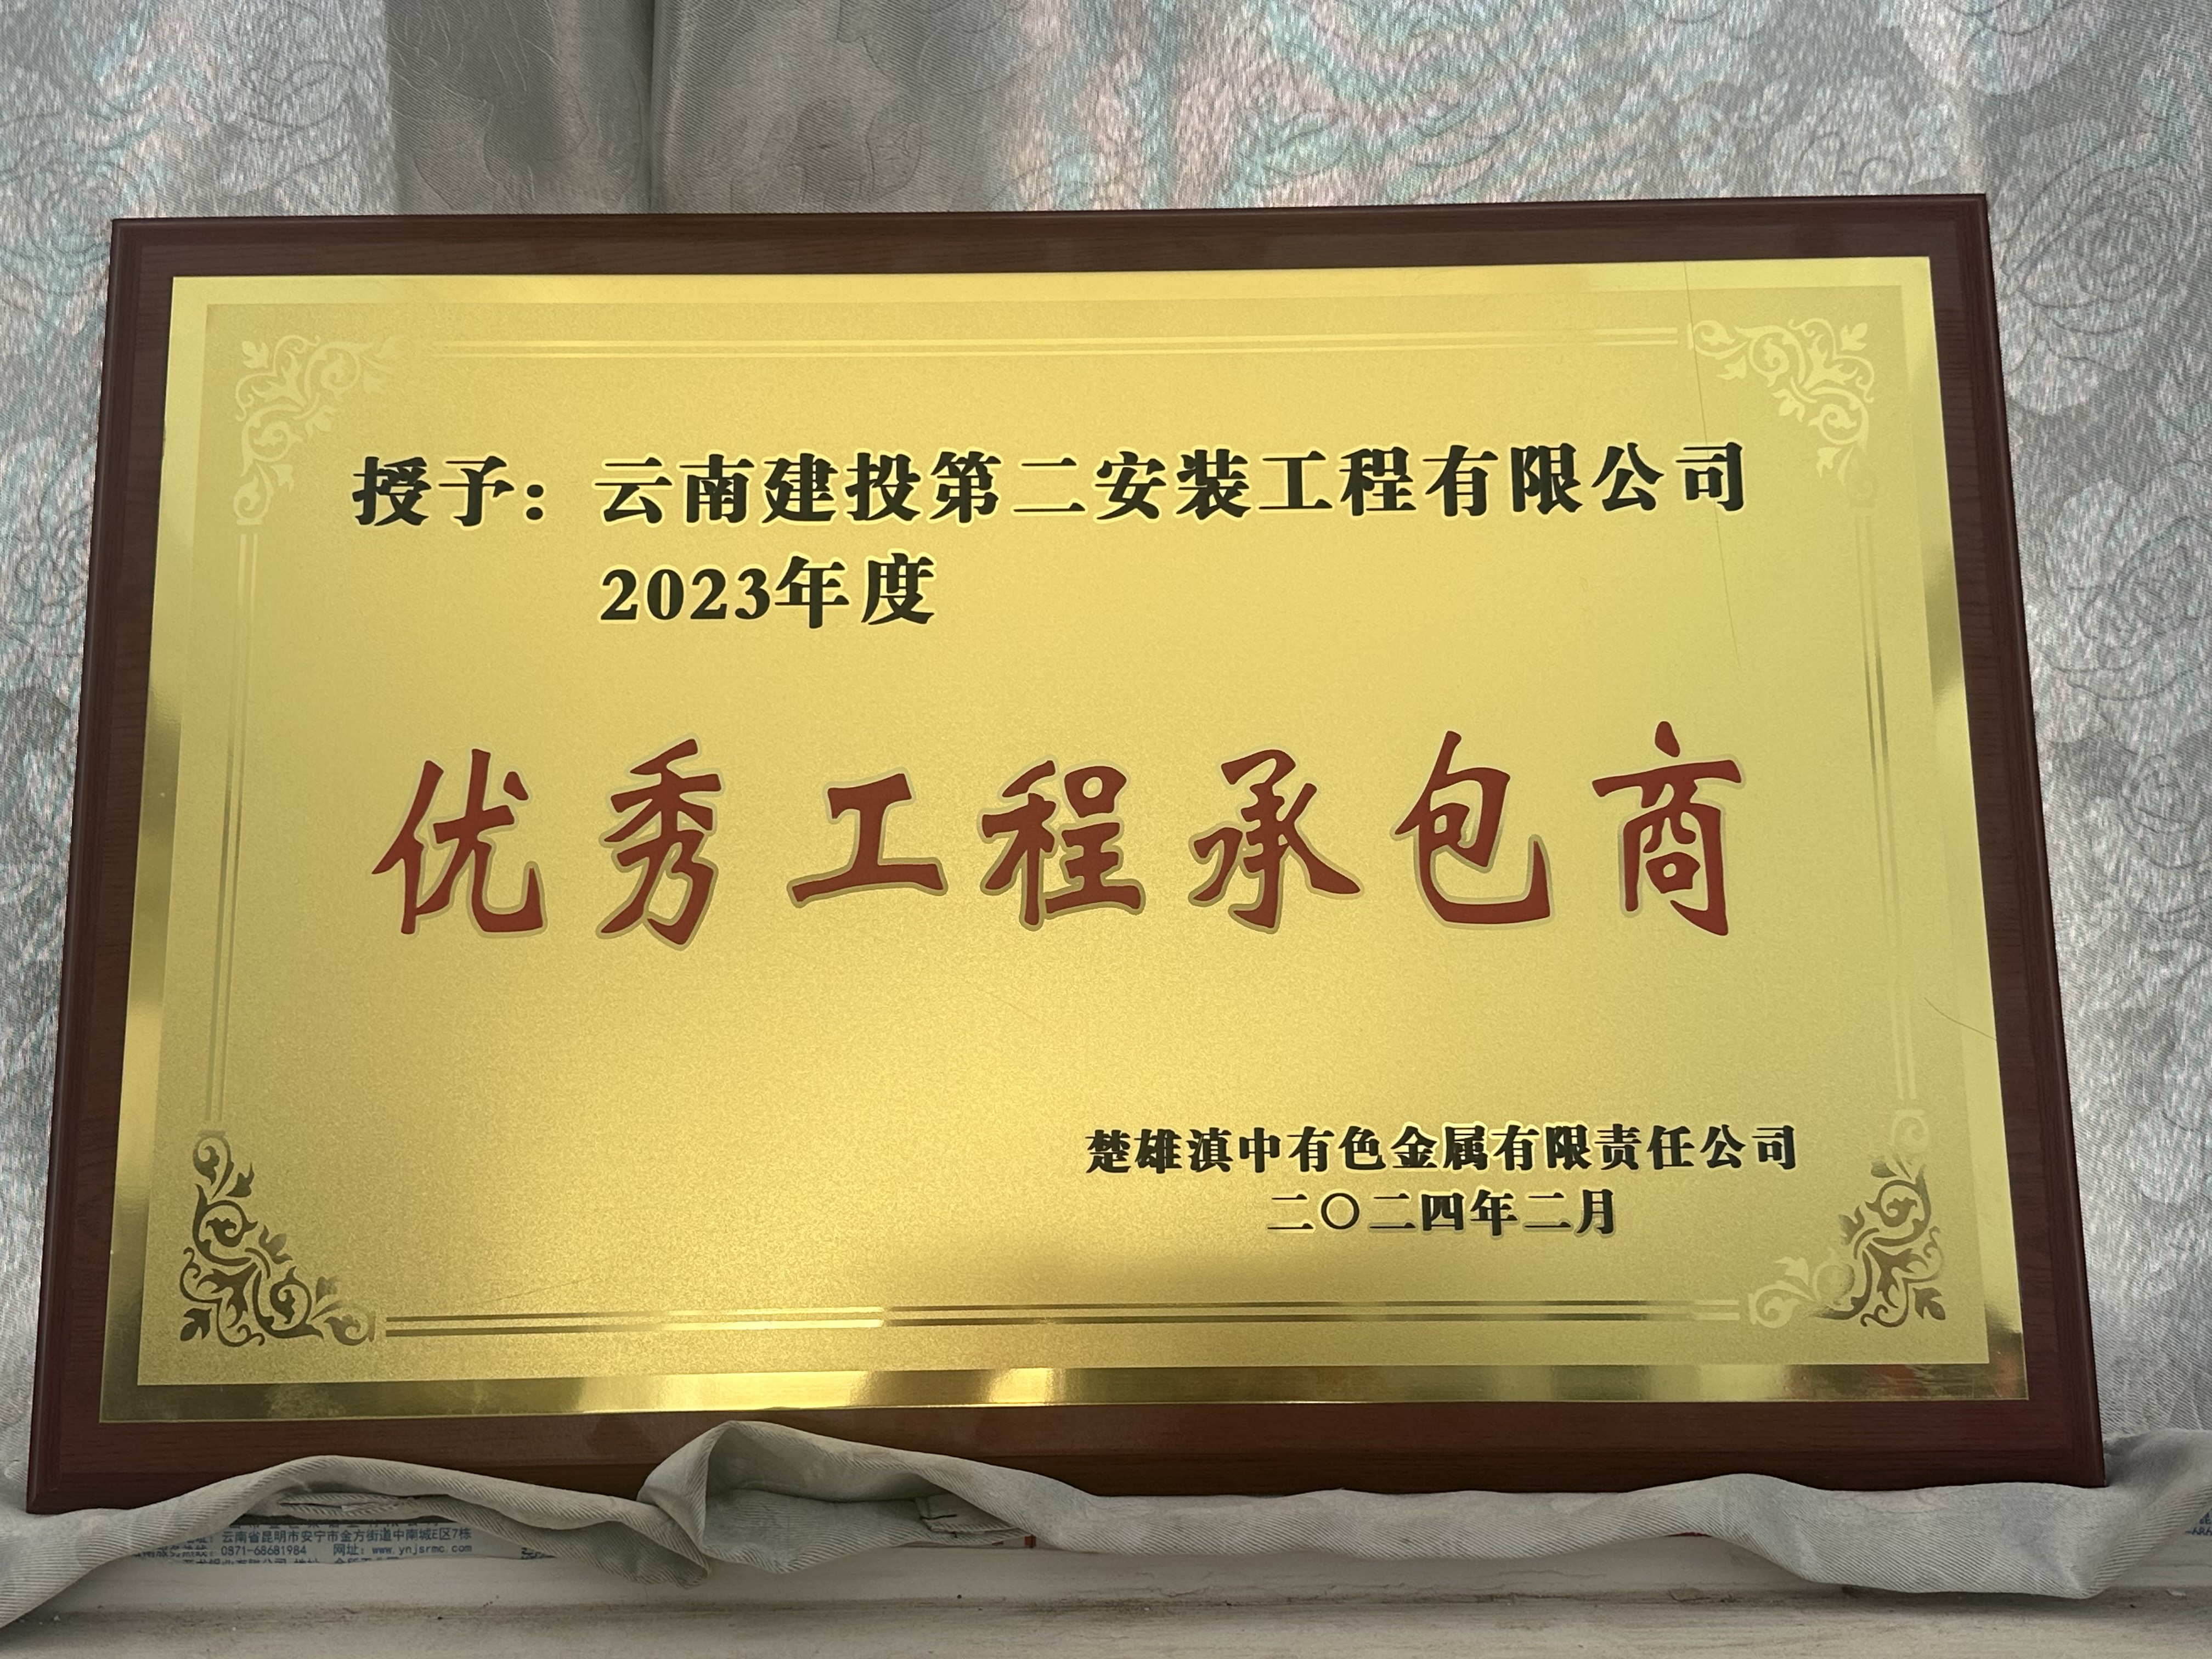 第二工程项目部楚雄滇中有色项目连续两年获得“优秀工程承包商”荣誉称号